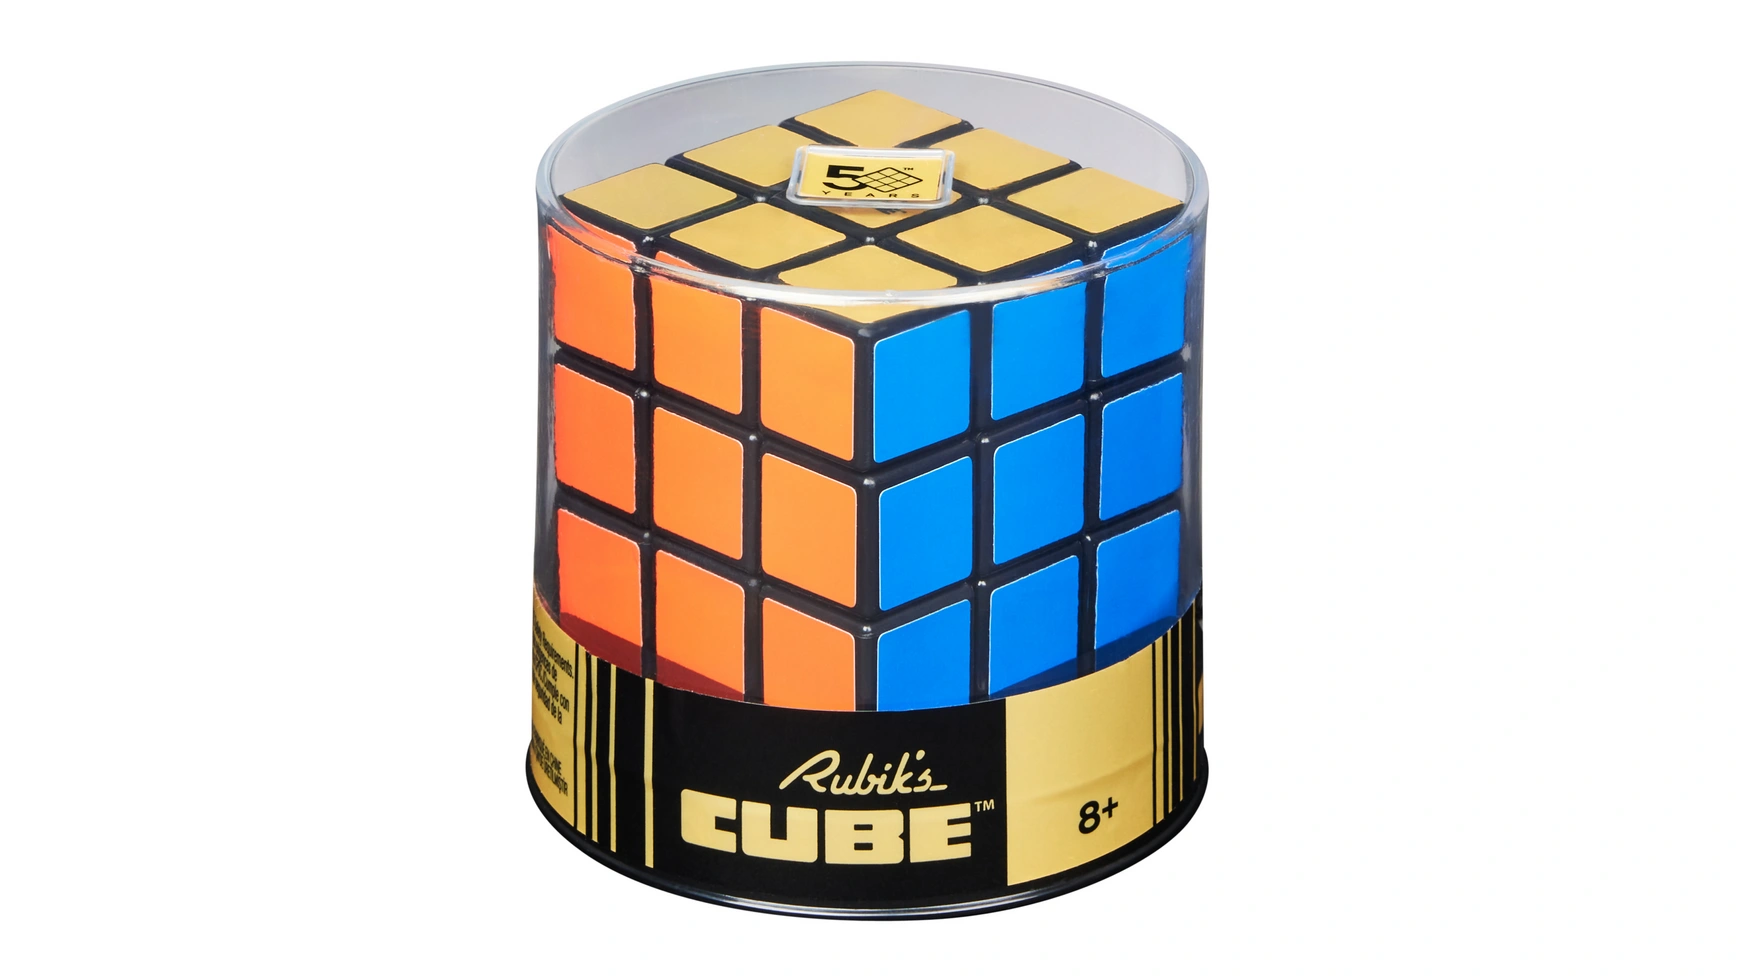 Ретро-кубик Рубика 3x3 Кубик Рубика кубик 3x3, внешний вид которого напоминает оригинал 50-летней давности Spin Master [picube] qiyi набор магических кубиков 2x2 3x3 4x4 5x5 пирамида skewb megaminx кленовый лист мастерморфикс скоростной кубик магический для детей